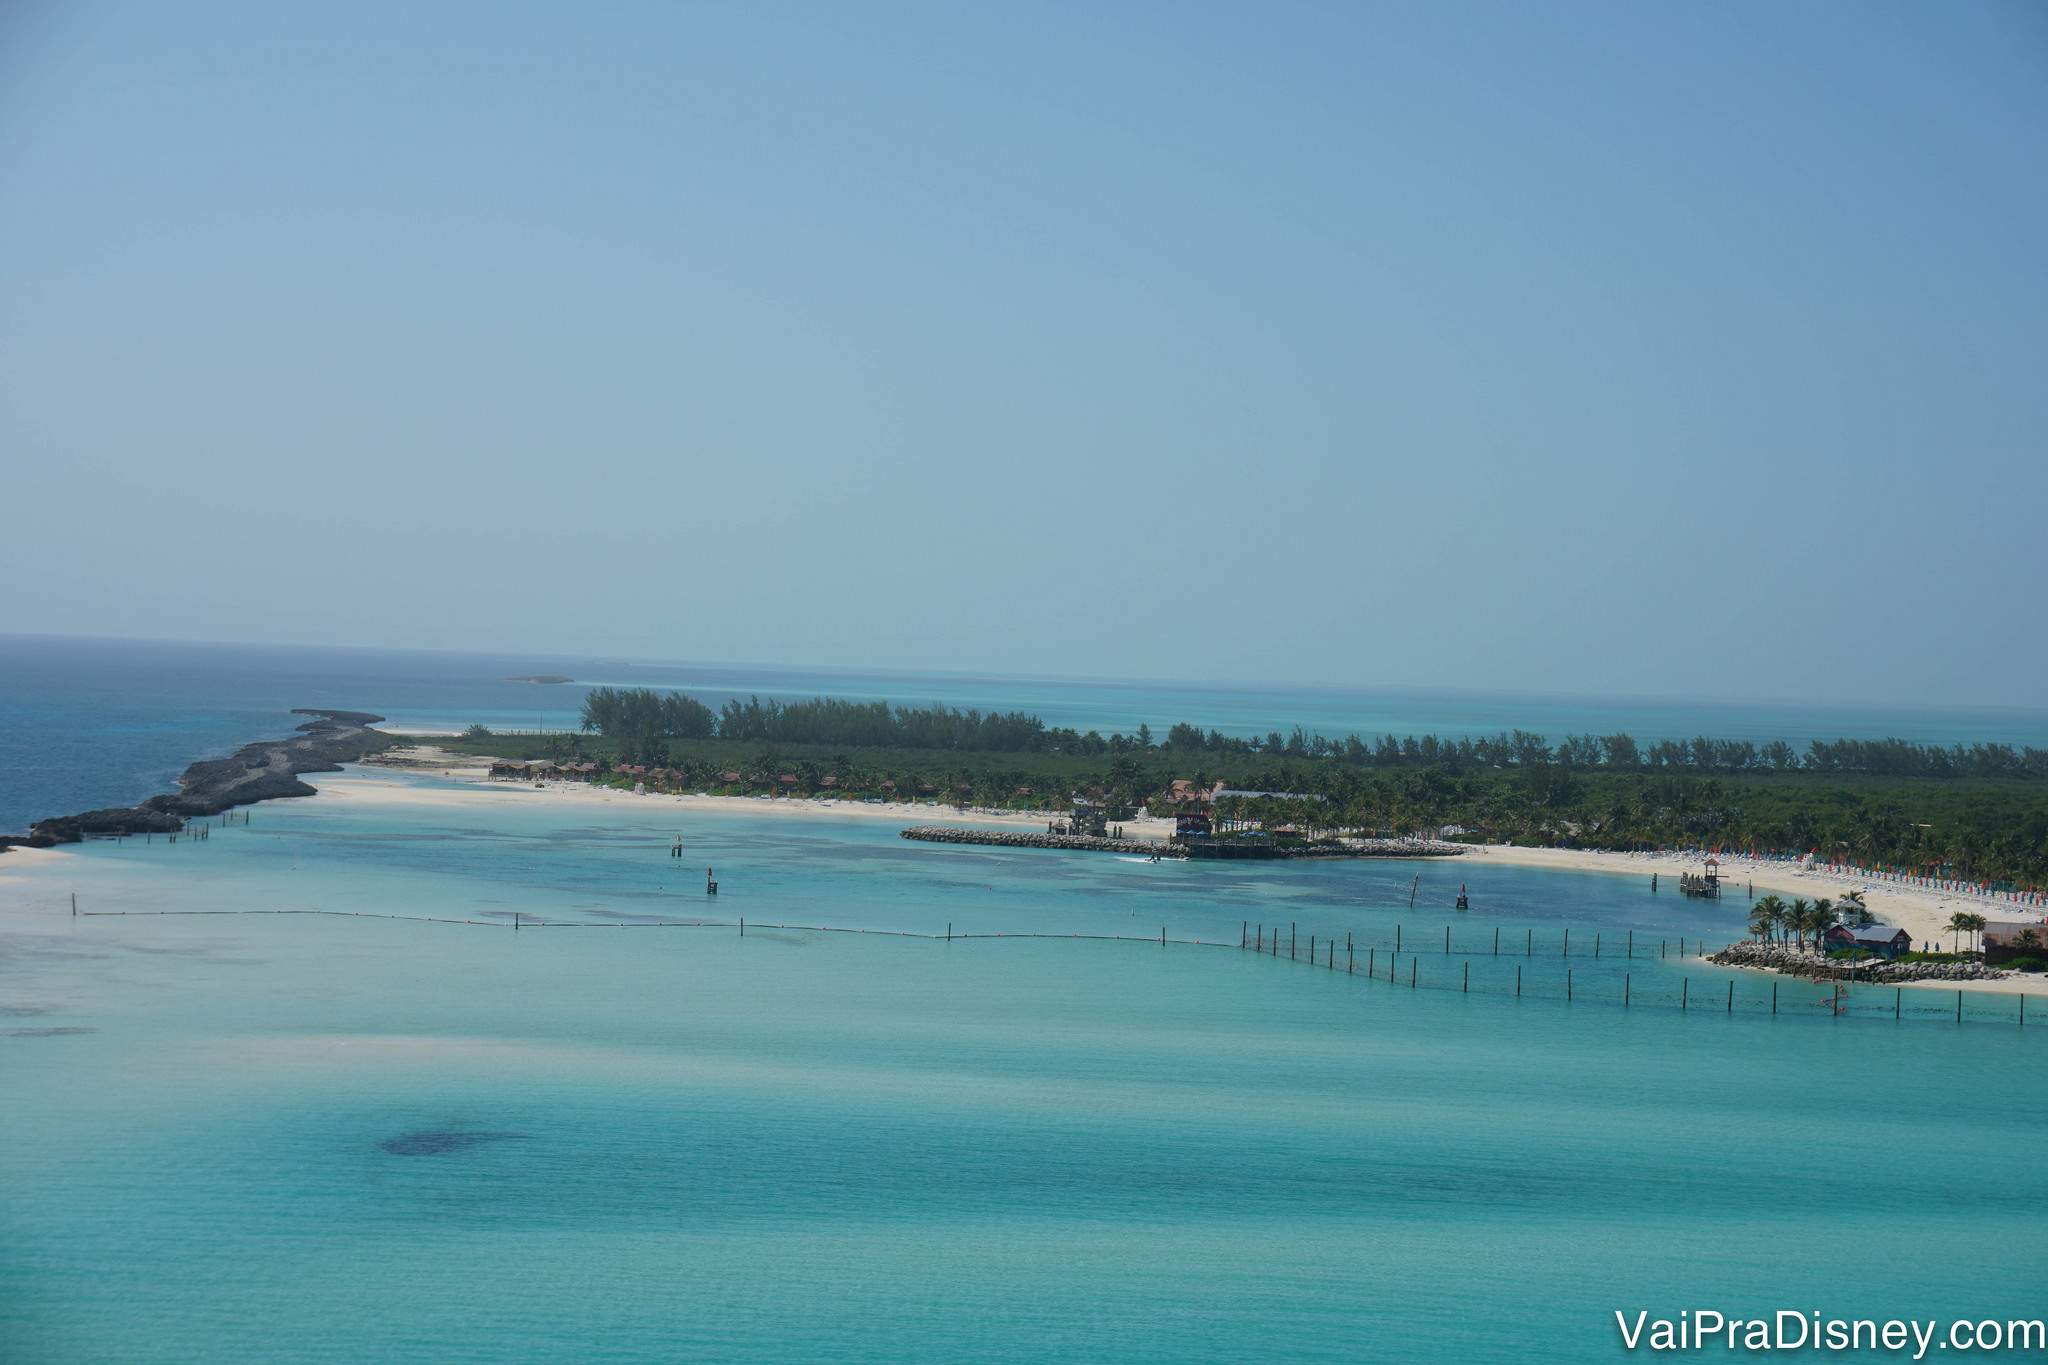 A Castaway Cay é a ilha privativa da Disney nas Bahamas, e parada de quase todos os cruzeiros que partem da Flórida.